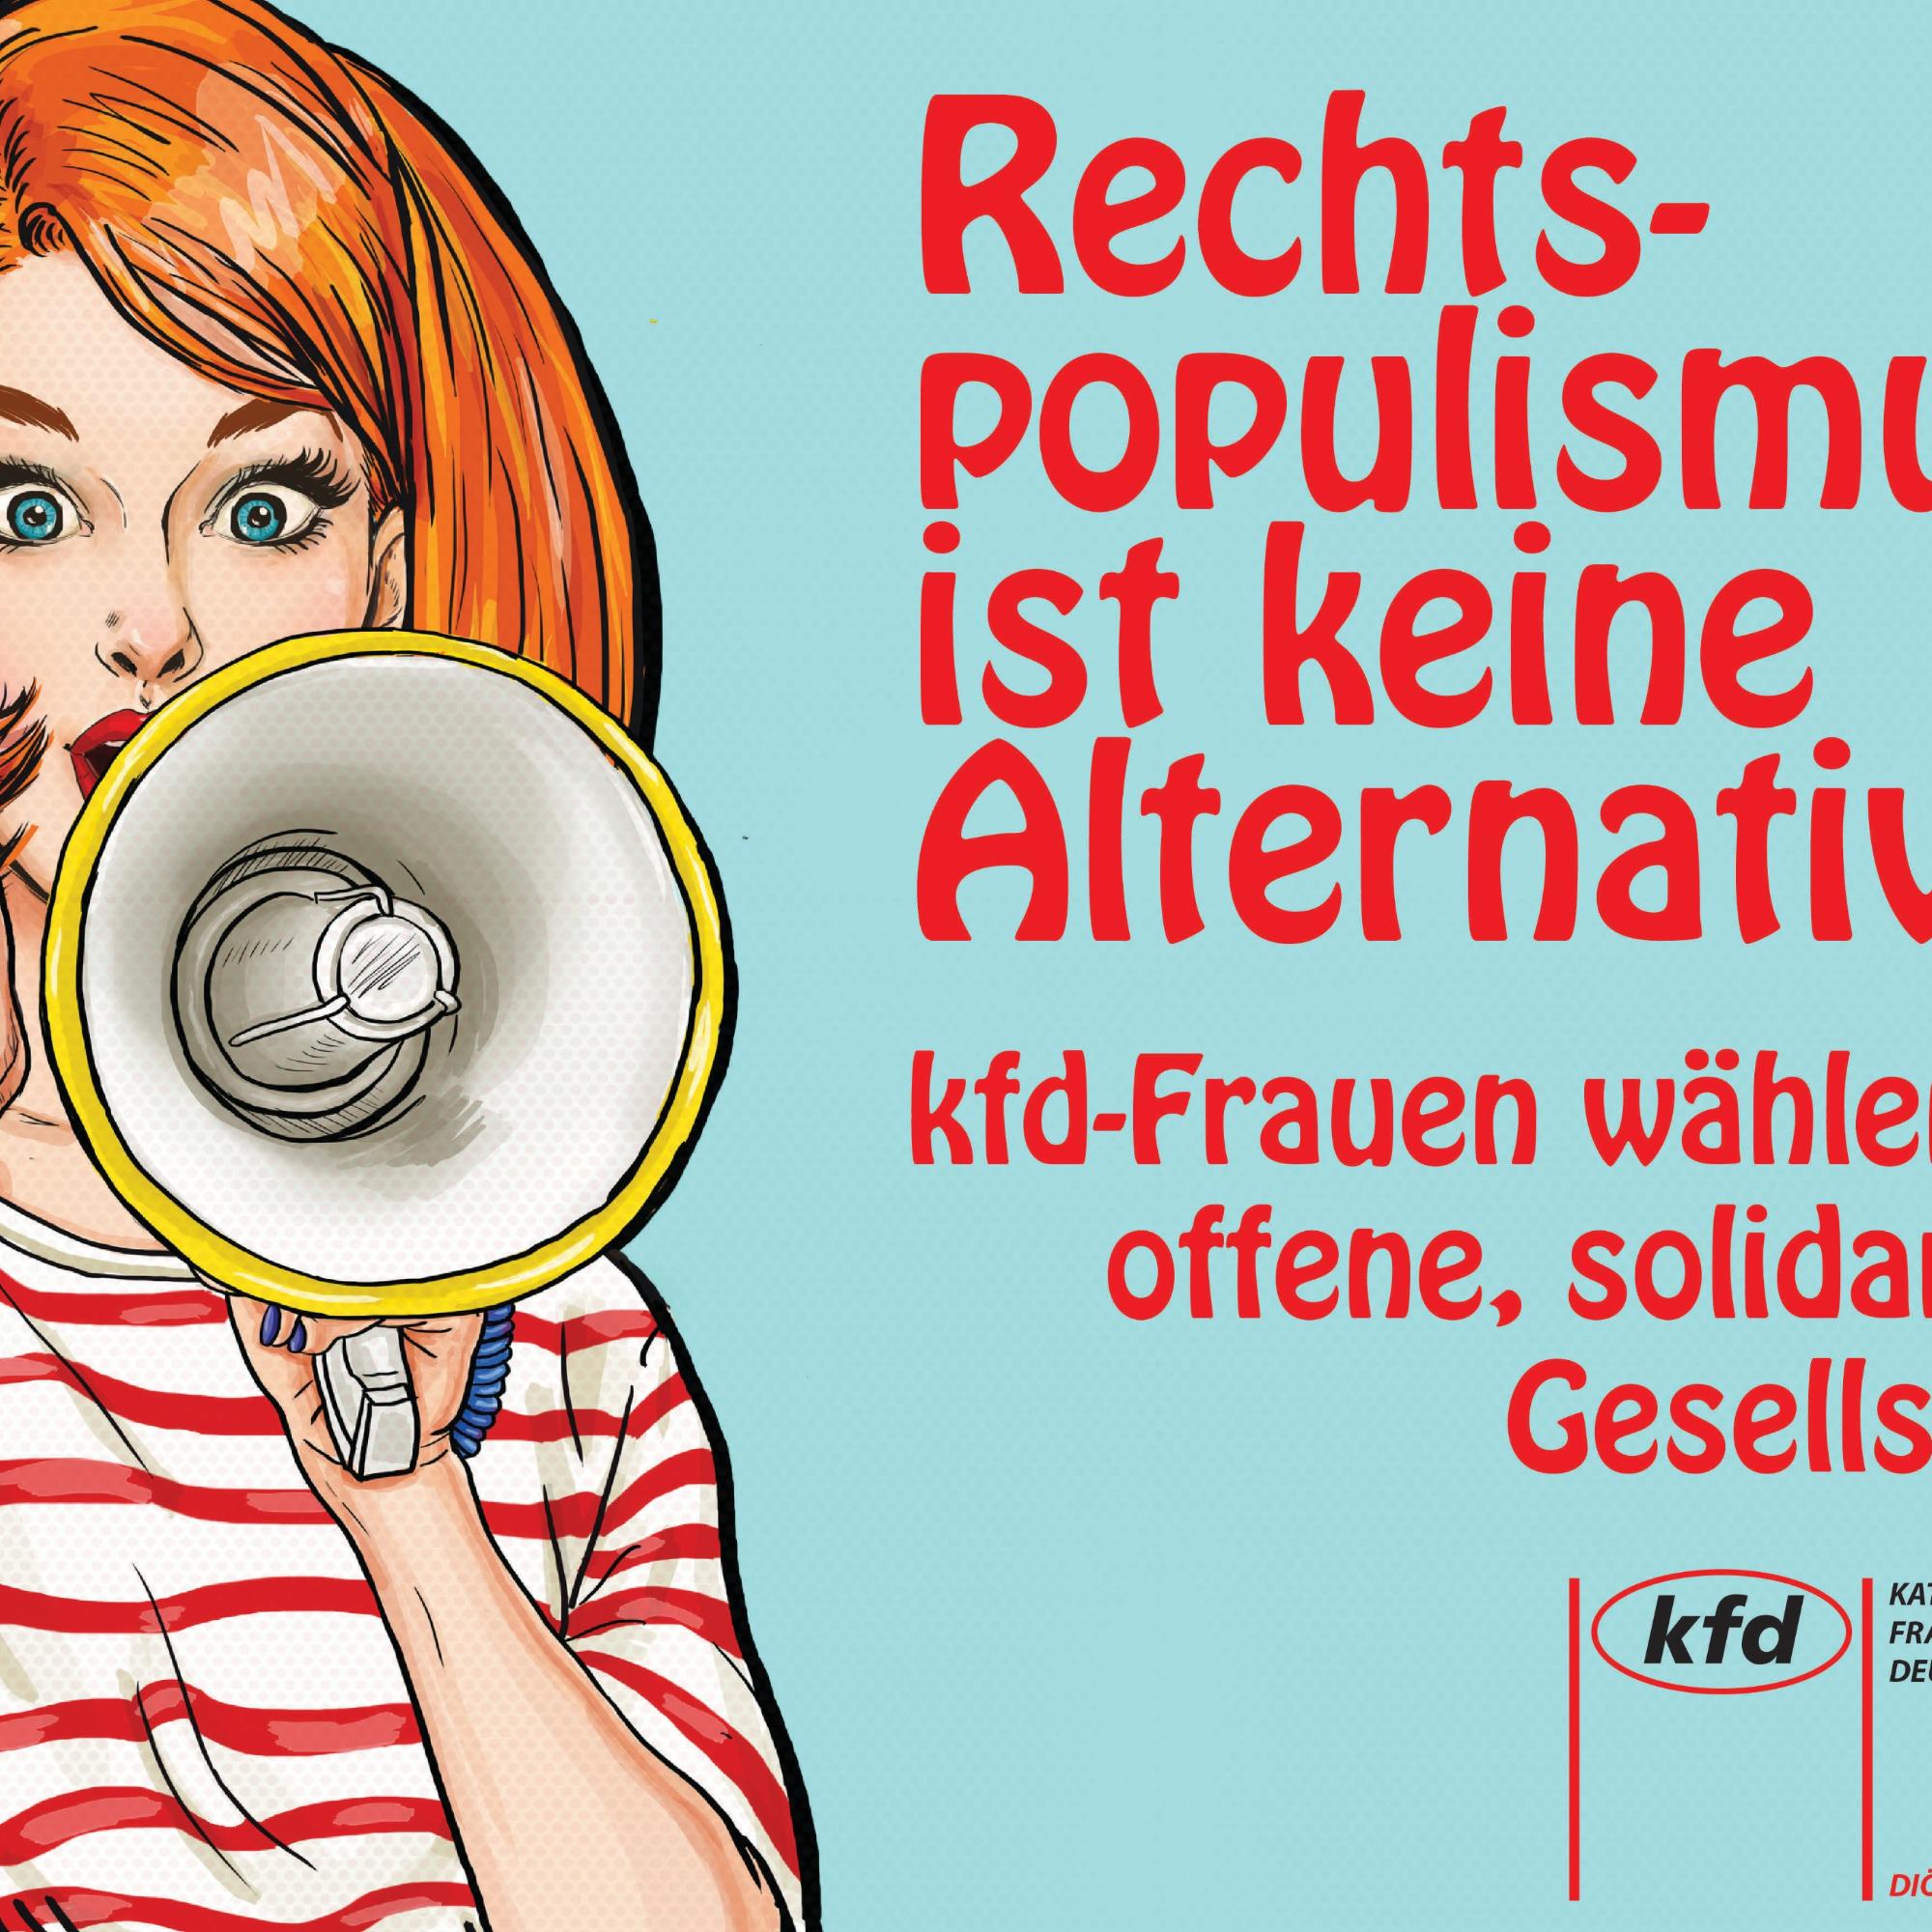 Plakat gegen Rechtspopulismus